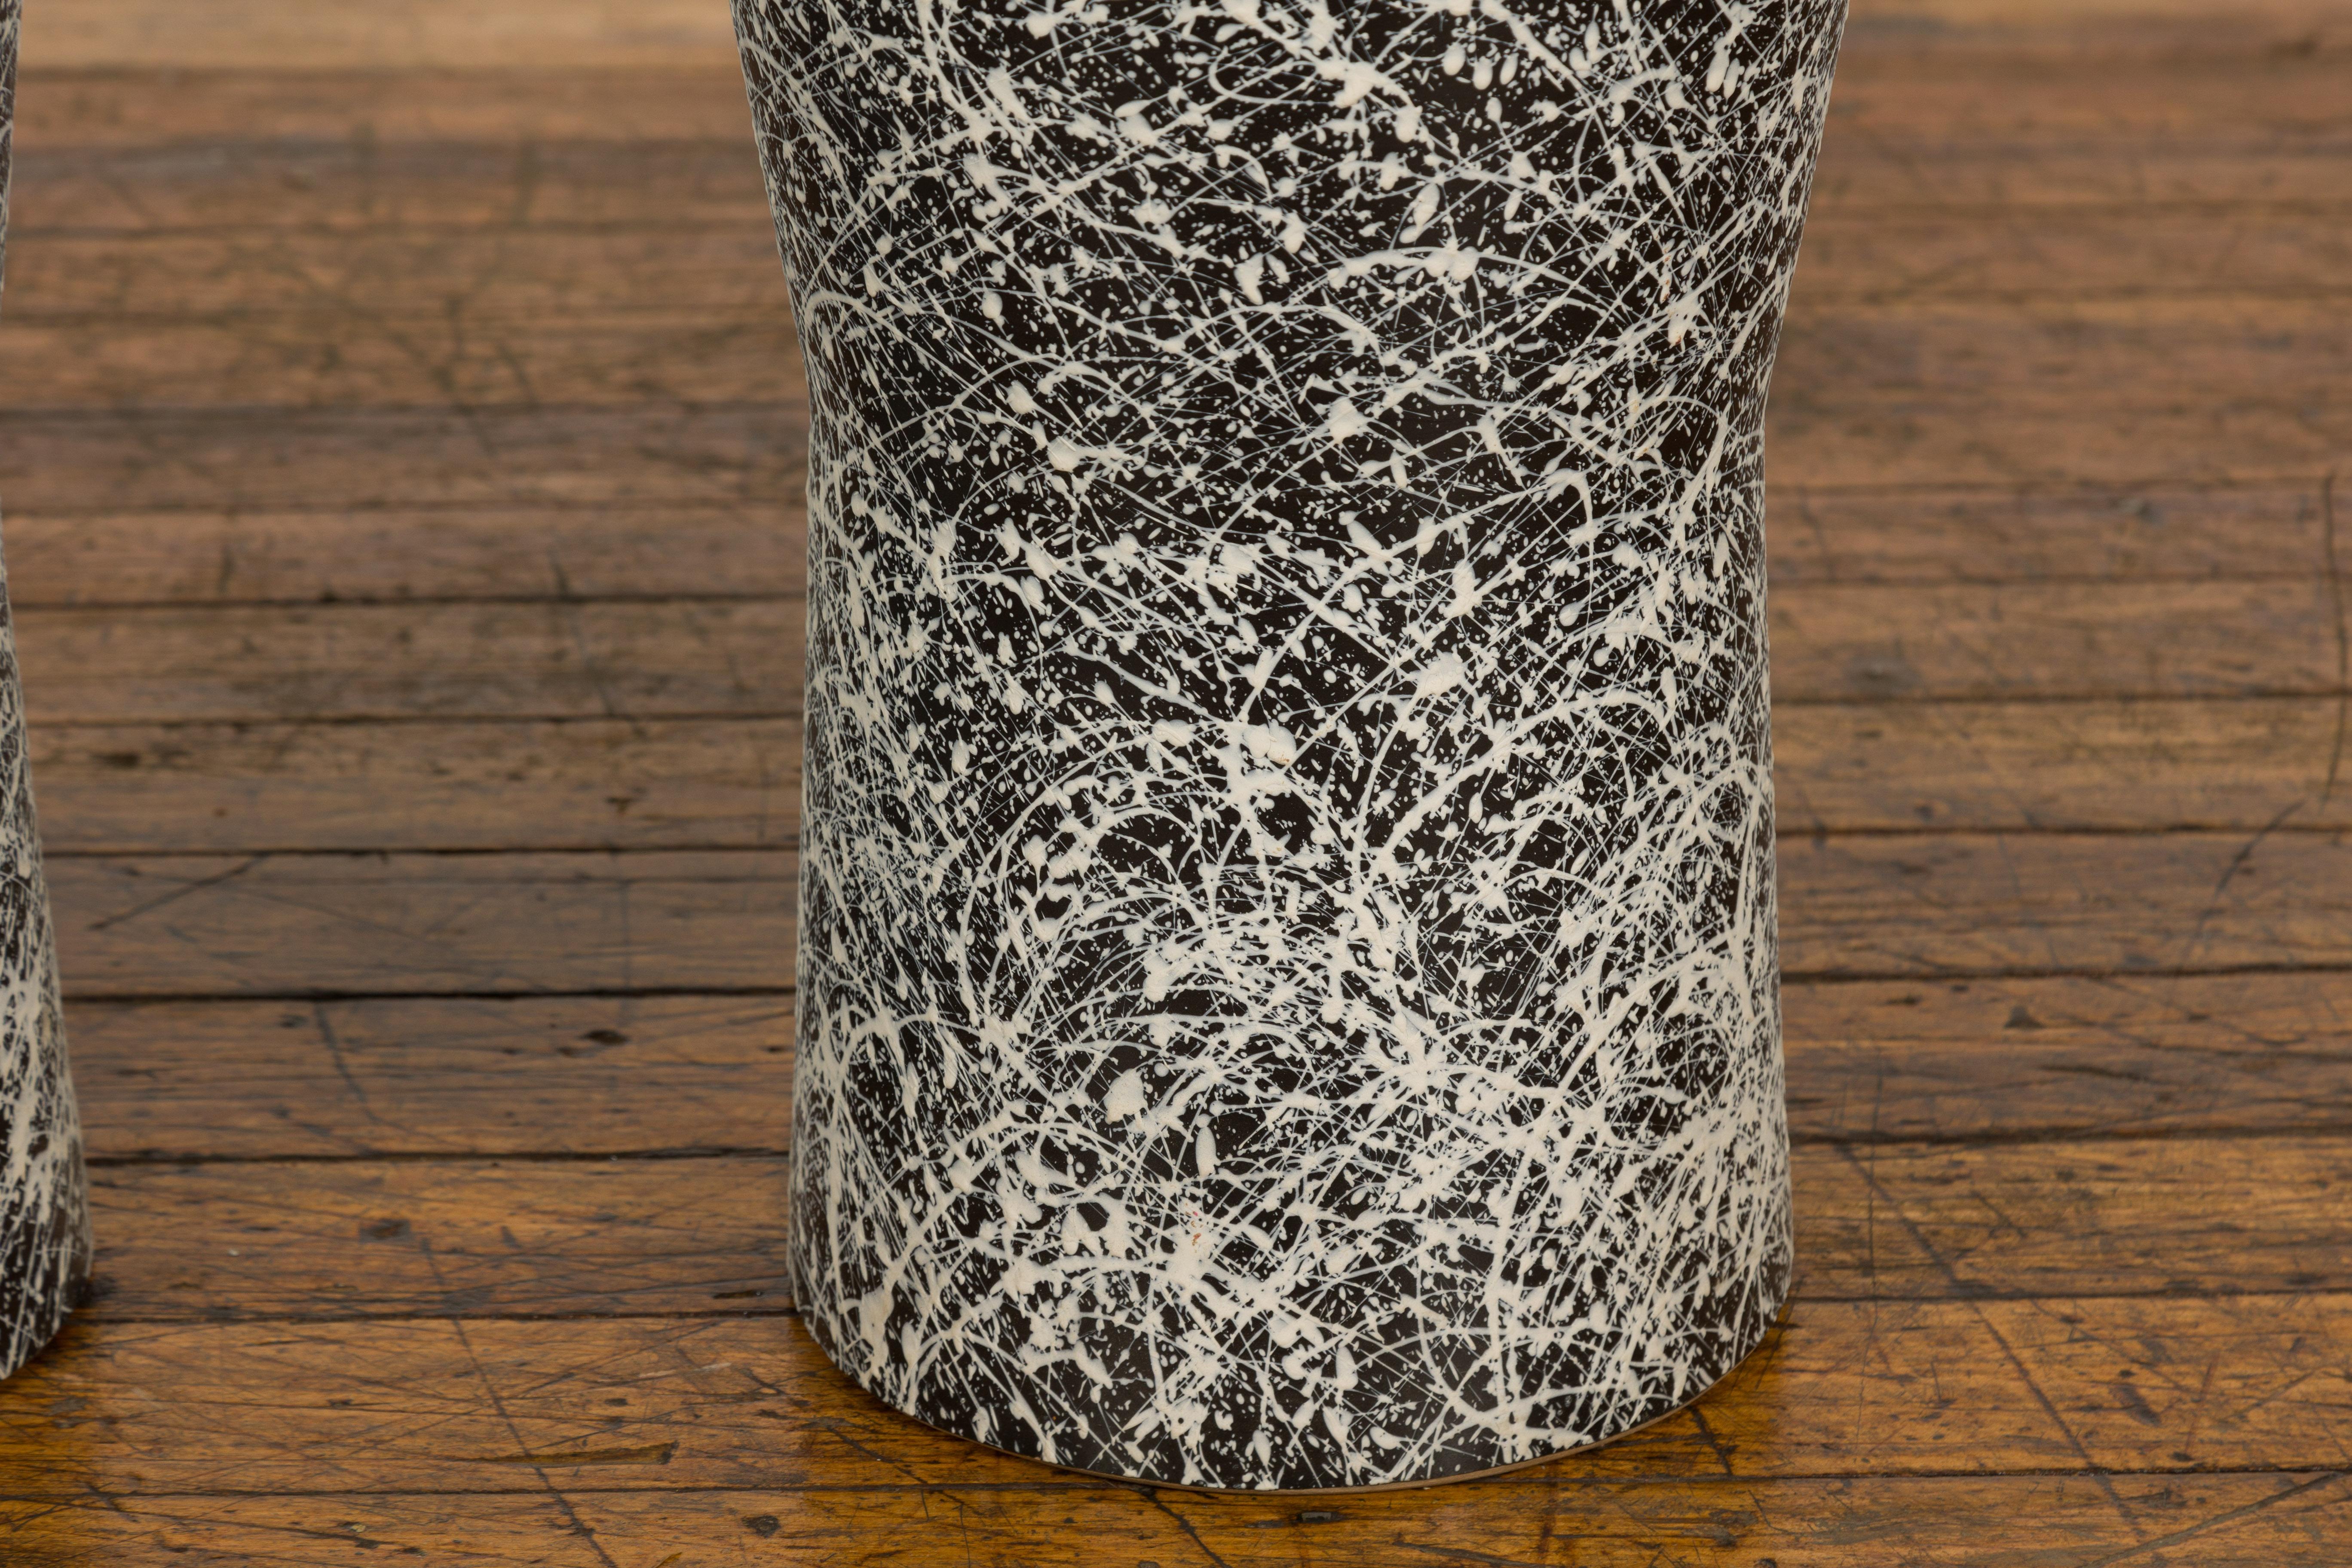 Pair of Textured Black & White Spattered Ceramic Vases For Sale 2